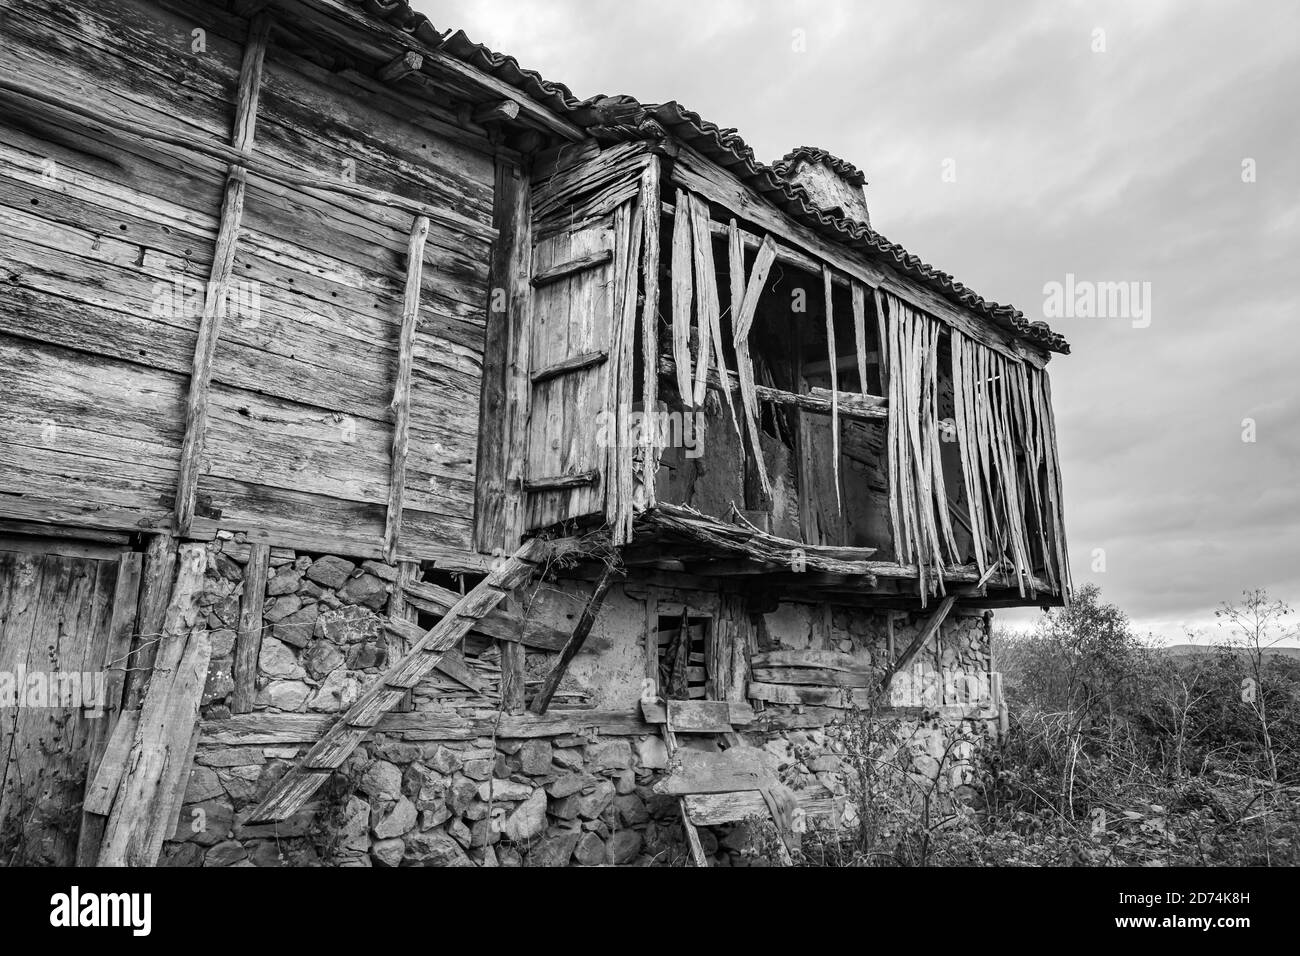 Fotografia di viaggio in bianco e nero, vista parziale della vecchia casa abbandonata, paesaggio rurale, montagna Strandzha, Bulgaria, tavole di legno facciata. Foto Stock